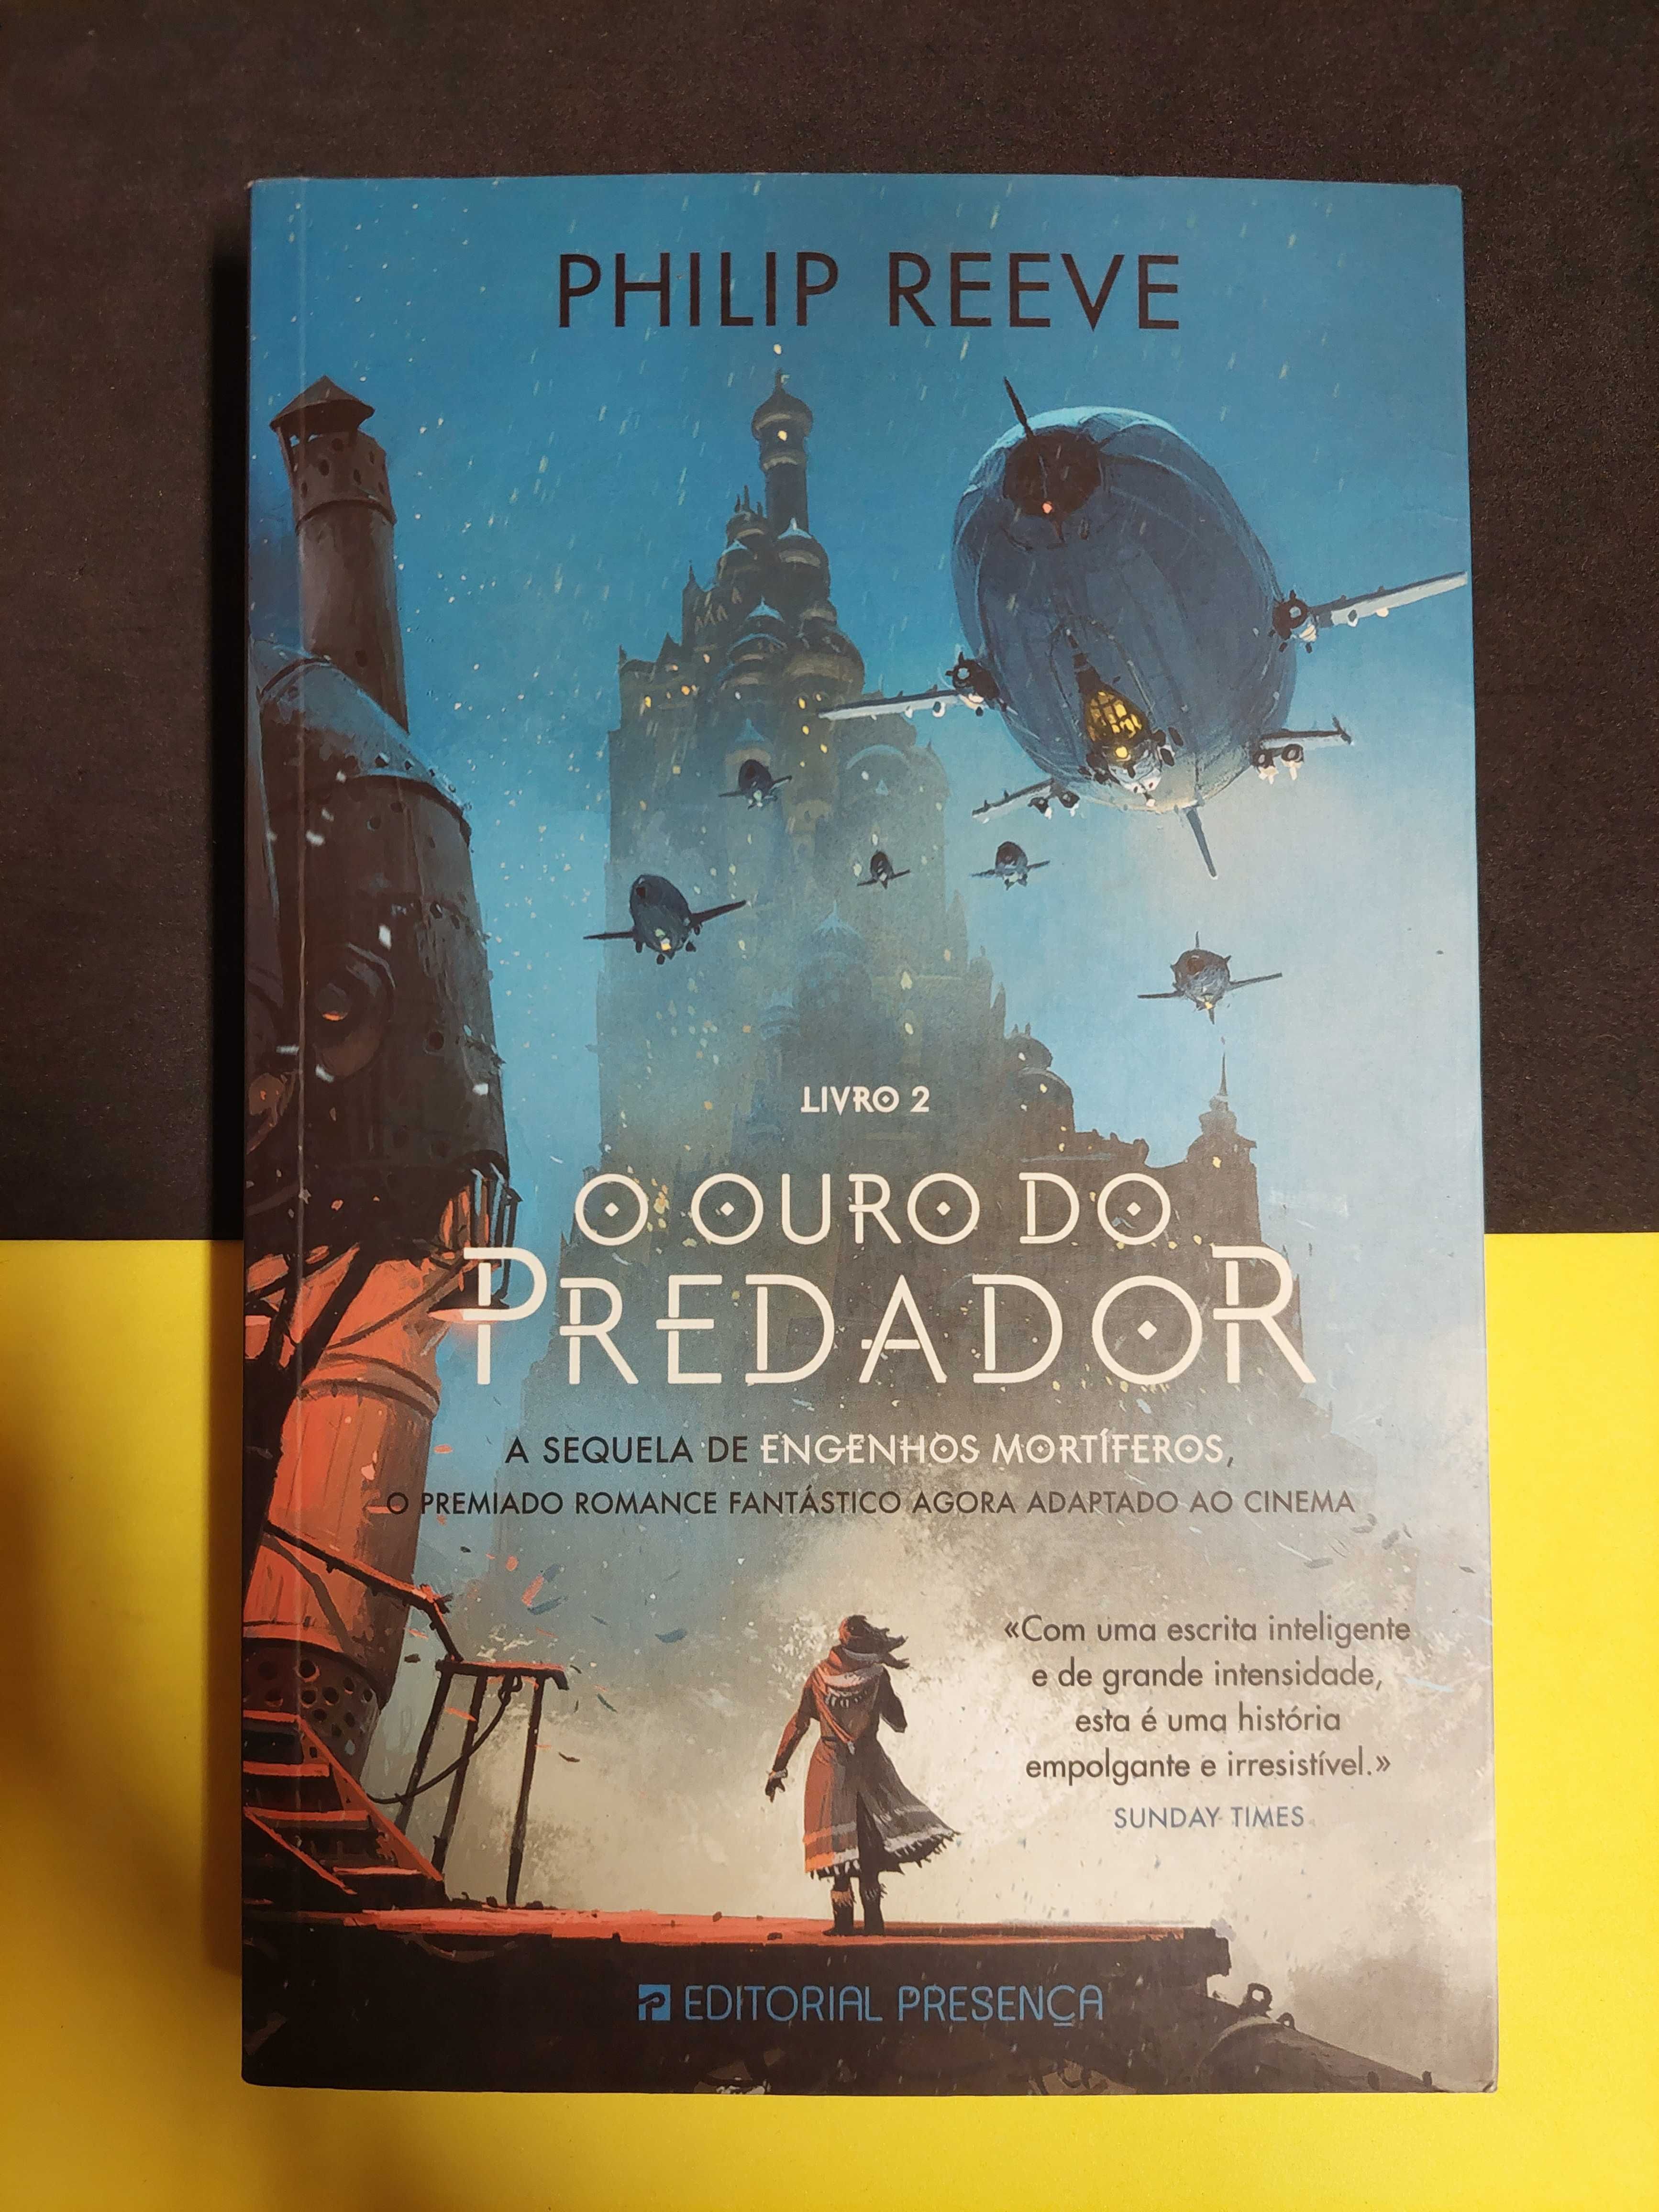 Philip Reeve - O ouro do predador